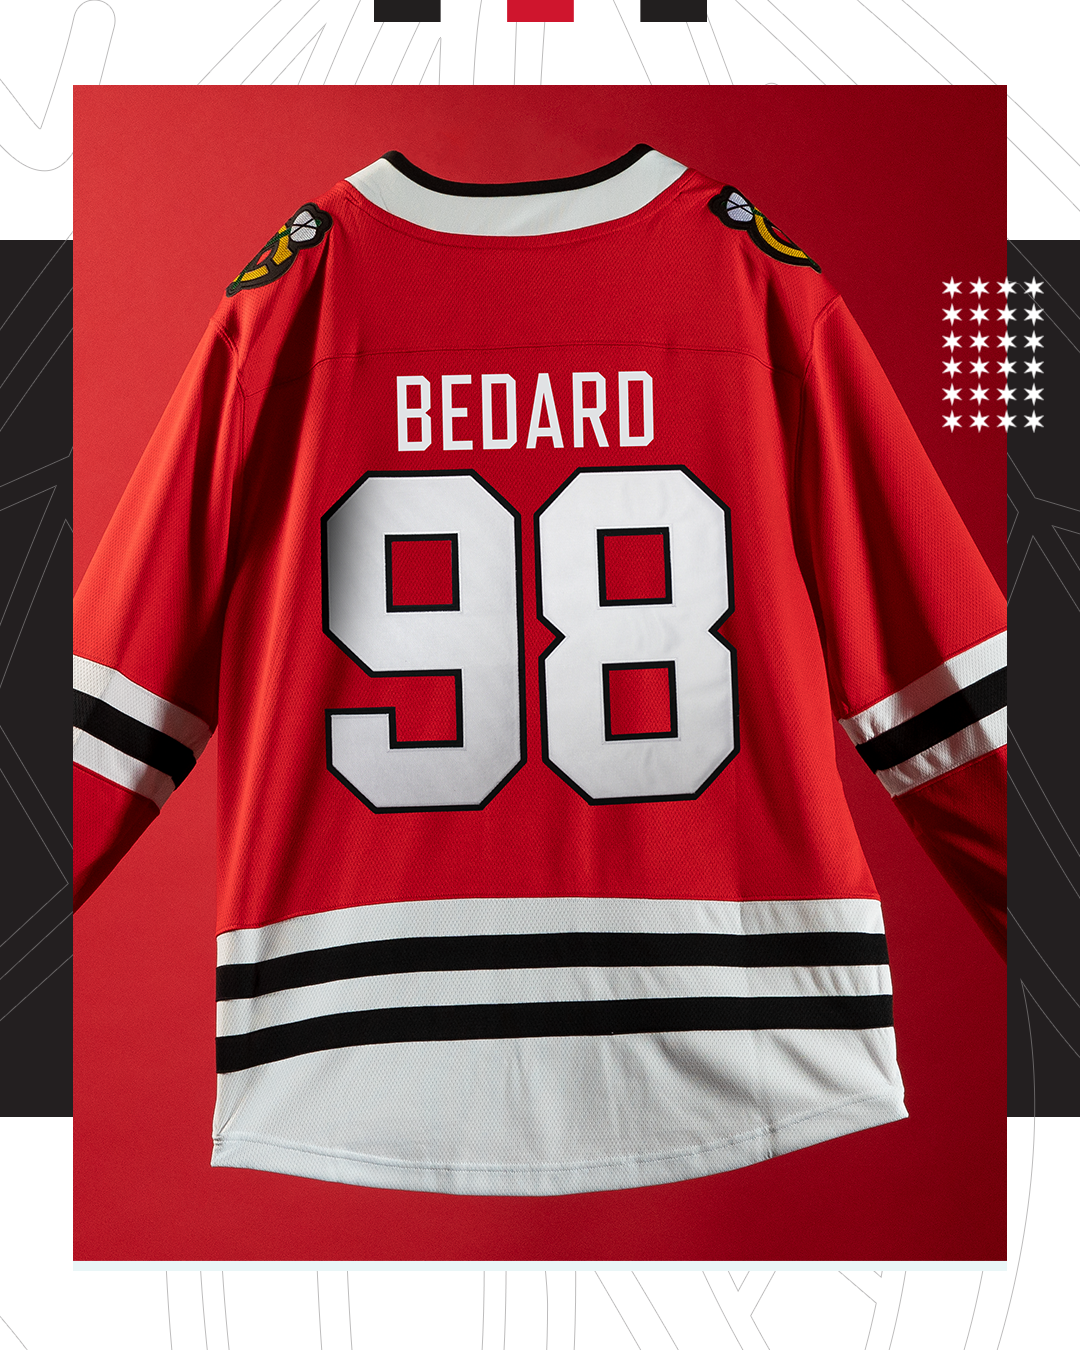 Connor Bedard Chicago Blackhawks Fanatics Replica NHL Jersey